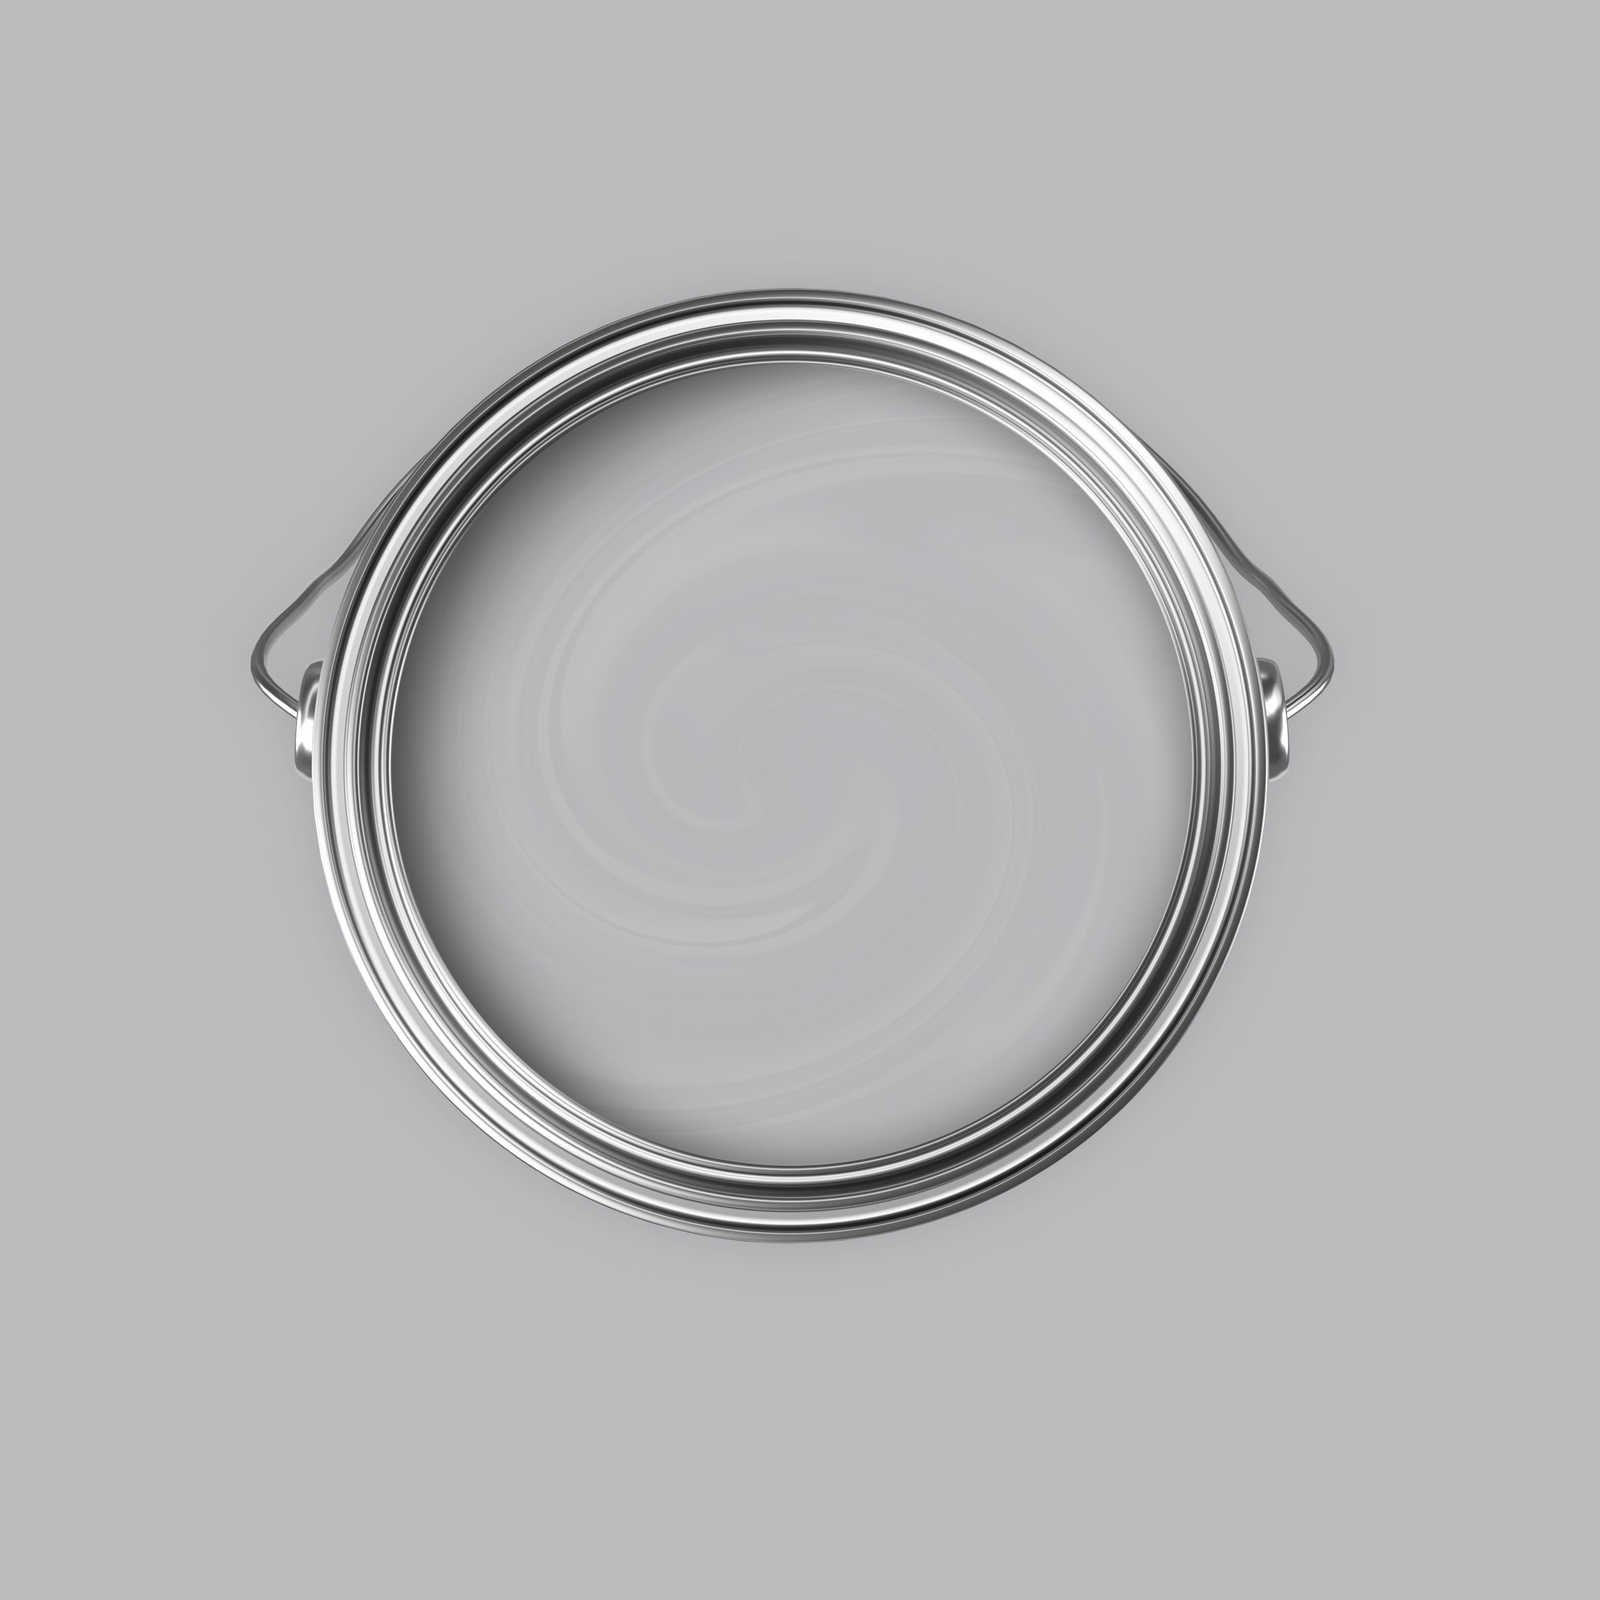             Premium Wandfarbe ausgeglichenes Silber »Industrial Grey« NW101 – 5 Liter
        